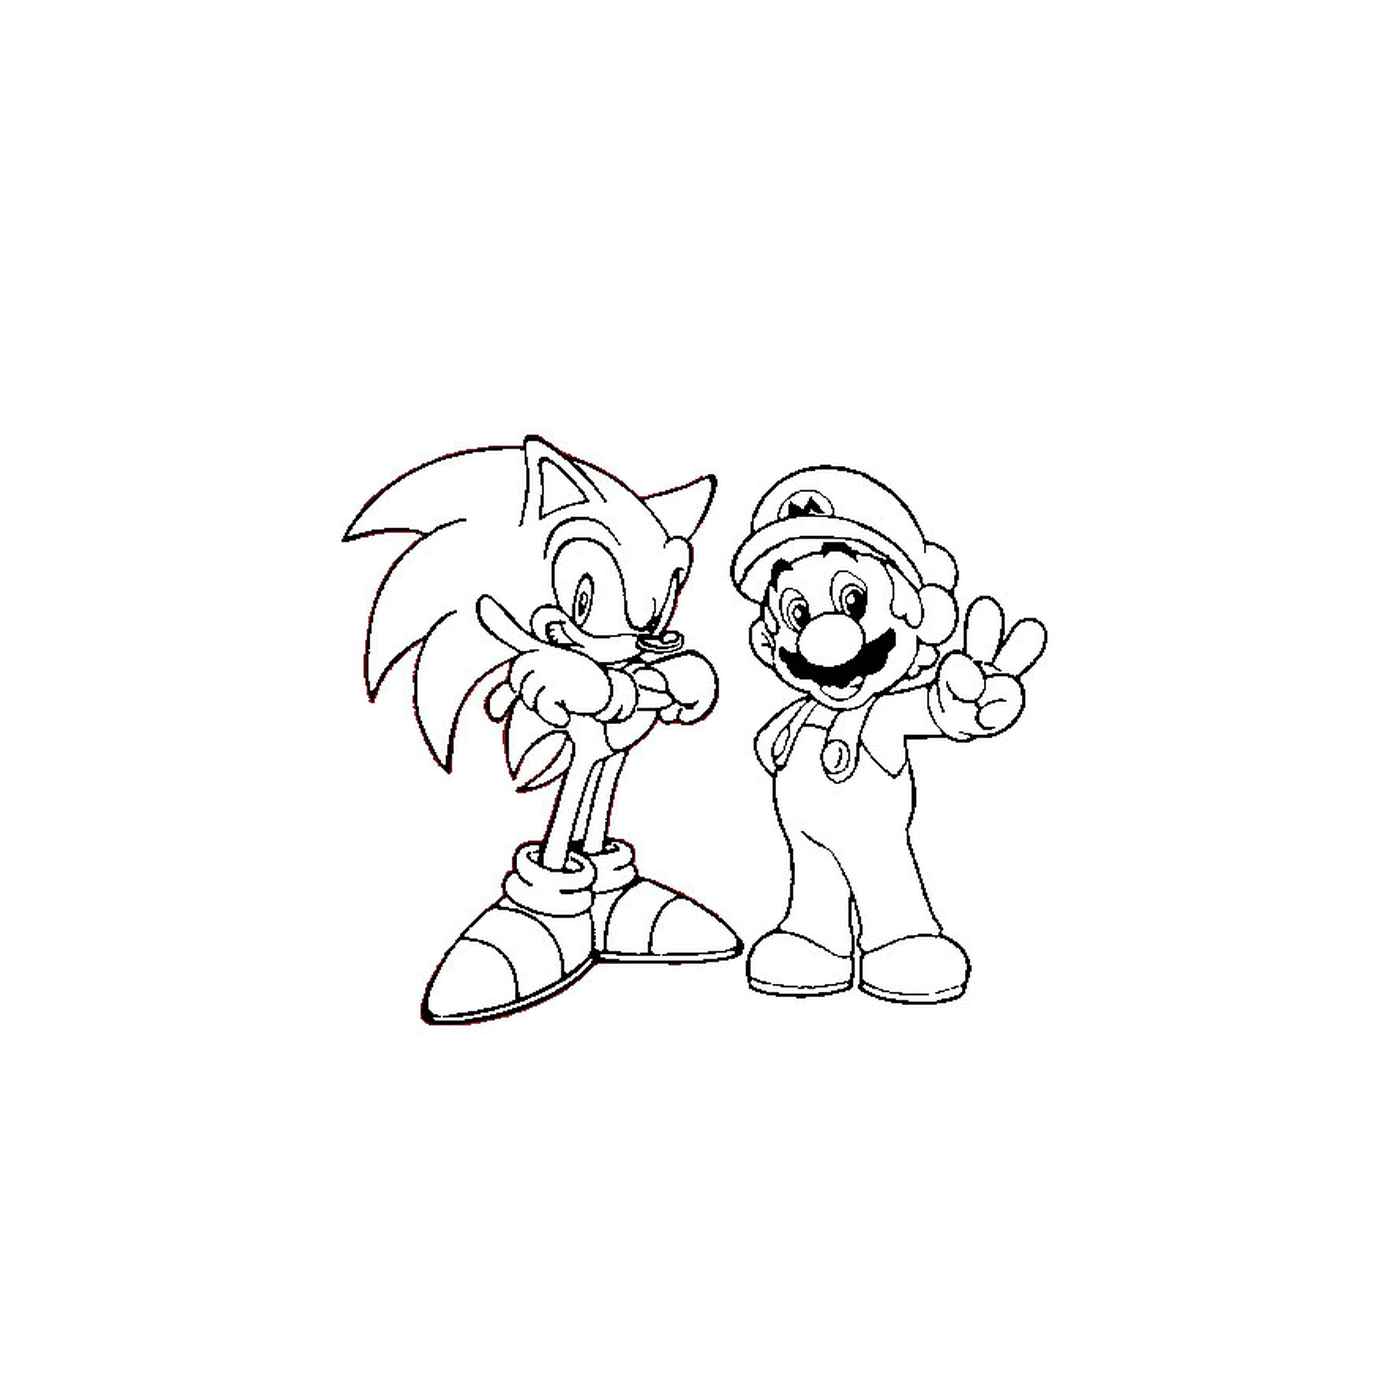  Mario y Sonic juntos 